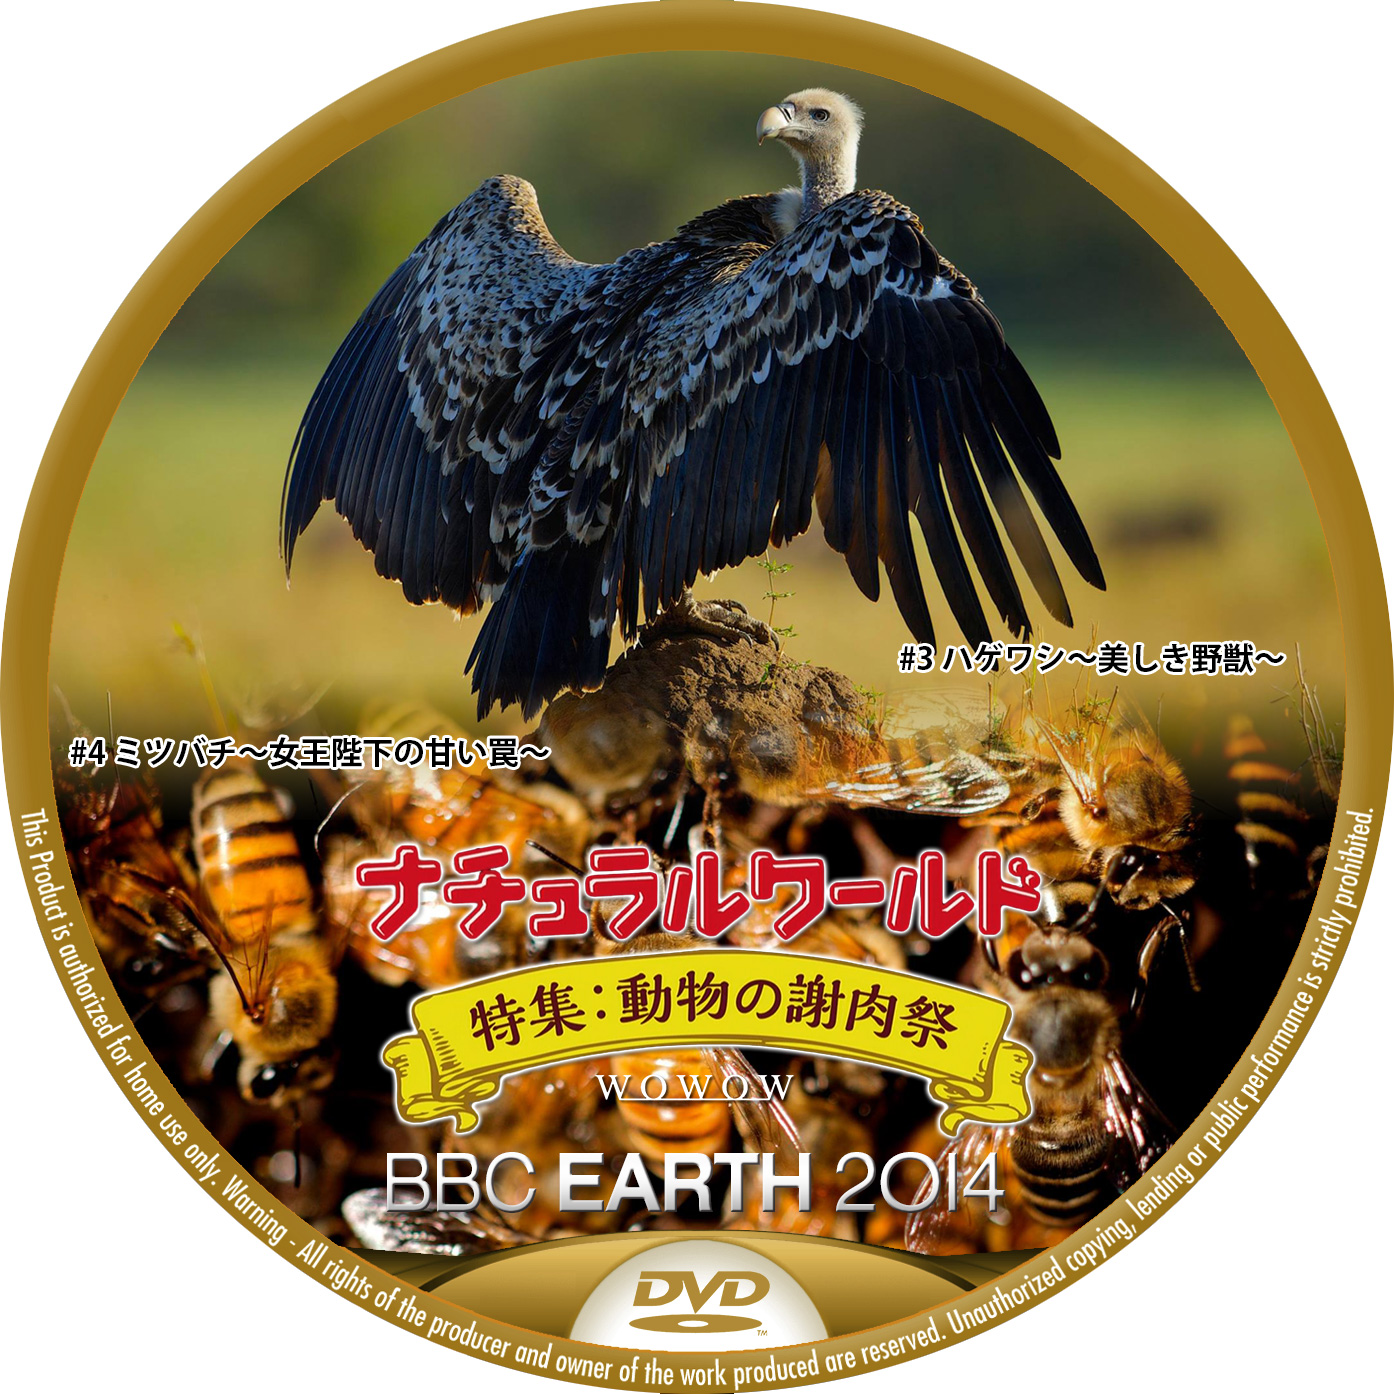 BBC EARTH 2014 WOWOW ミツバチ ハゲワシ DVDラベル ナチュラルワールド